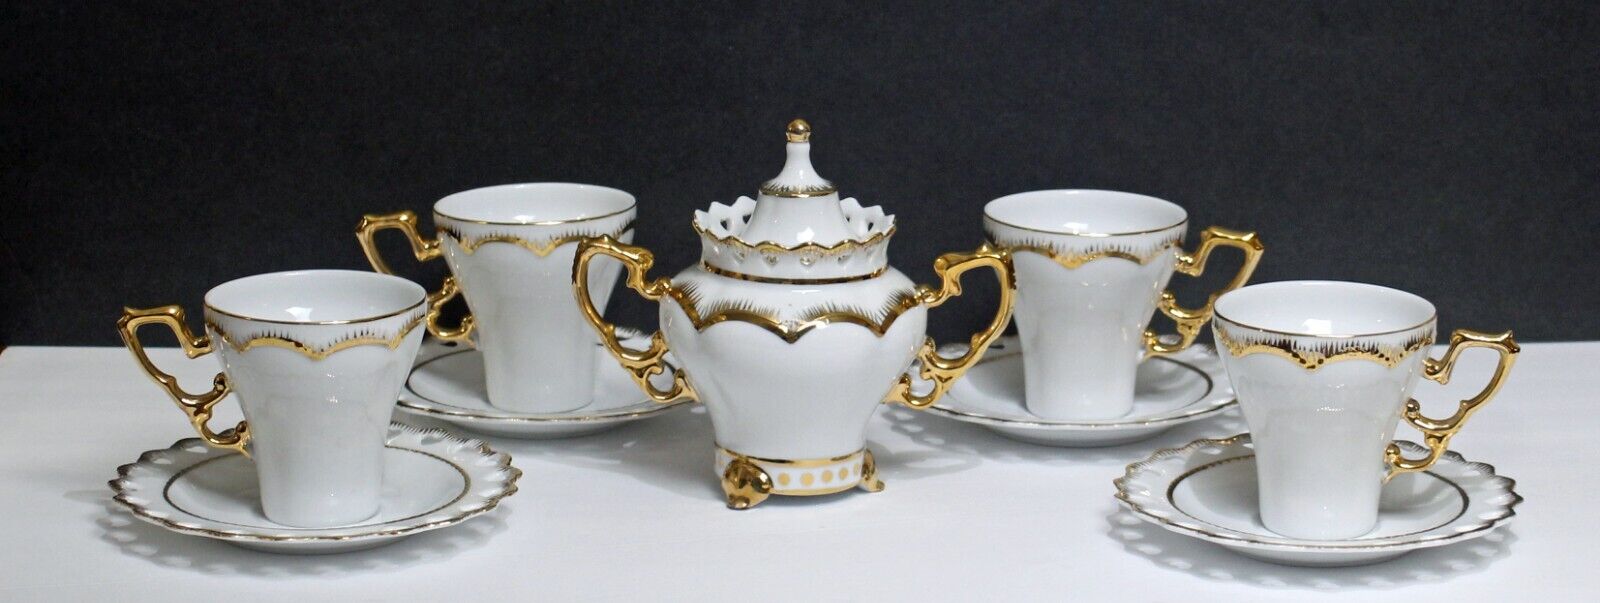 Vintage Adeline Teacup and Saucer Set Sugar Bowl White Gold Trim Bone China